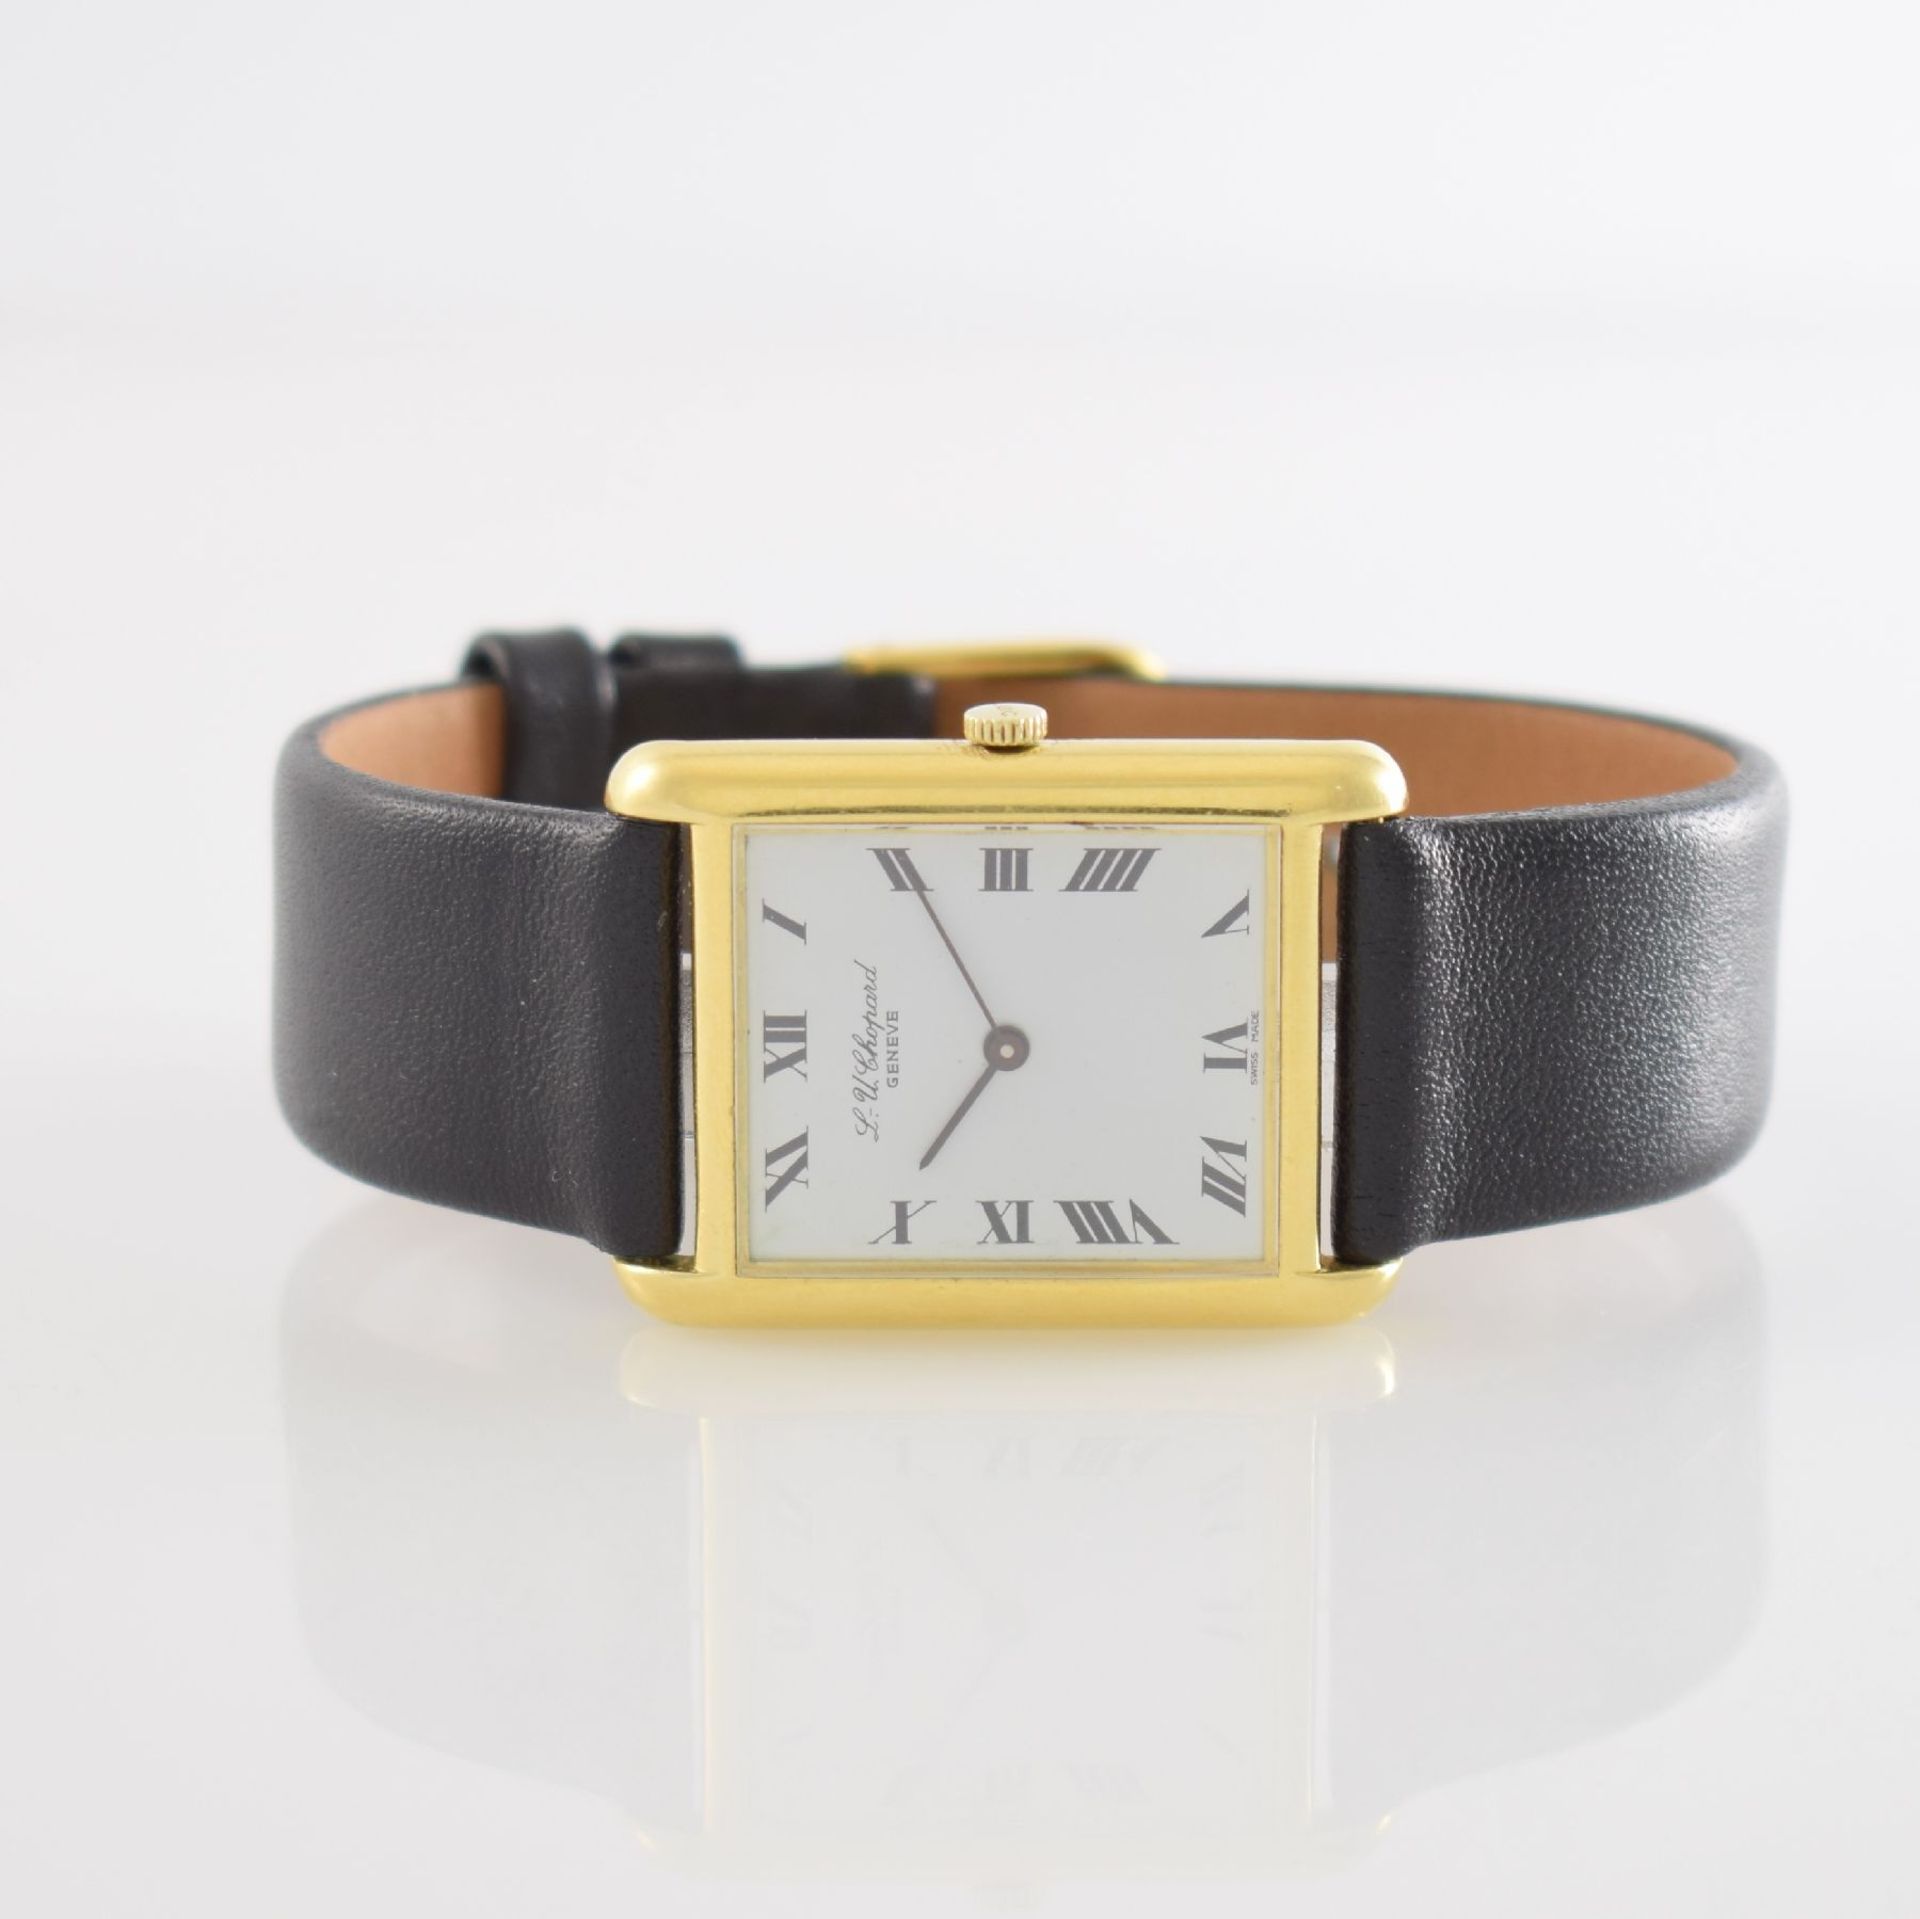 CHOPARD 18k yellow gold wristwatch, manual winding, Switzerland around 1990, reference 2012, two-